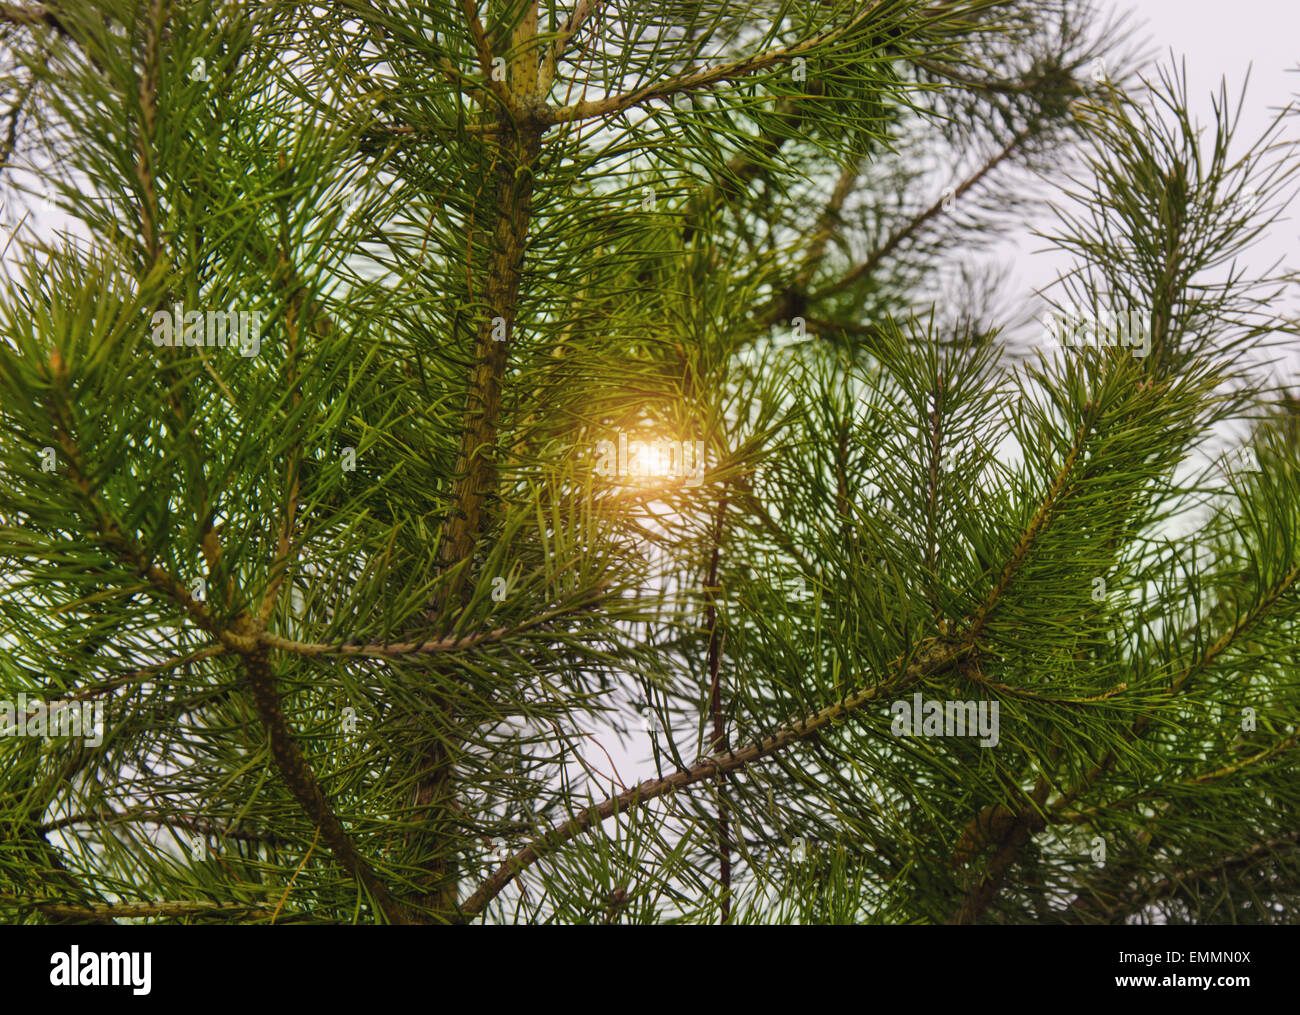 A green fir tree Stock Photo